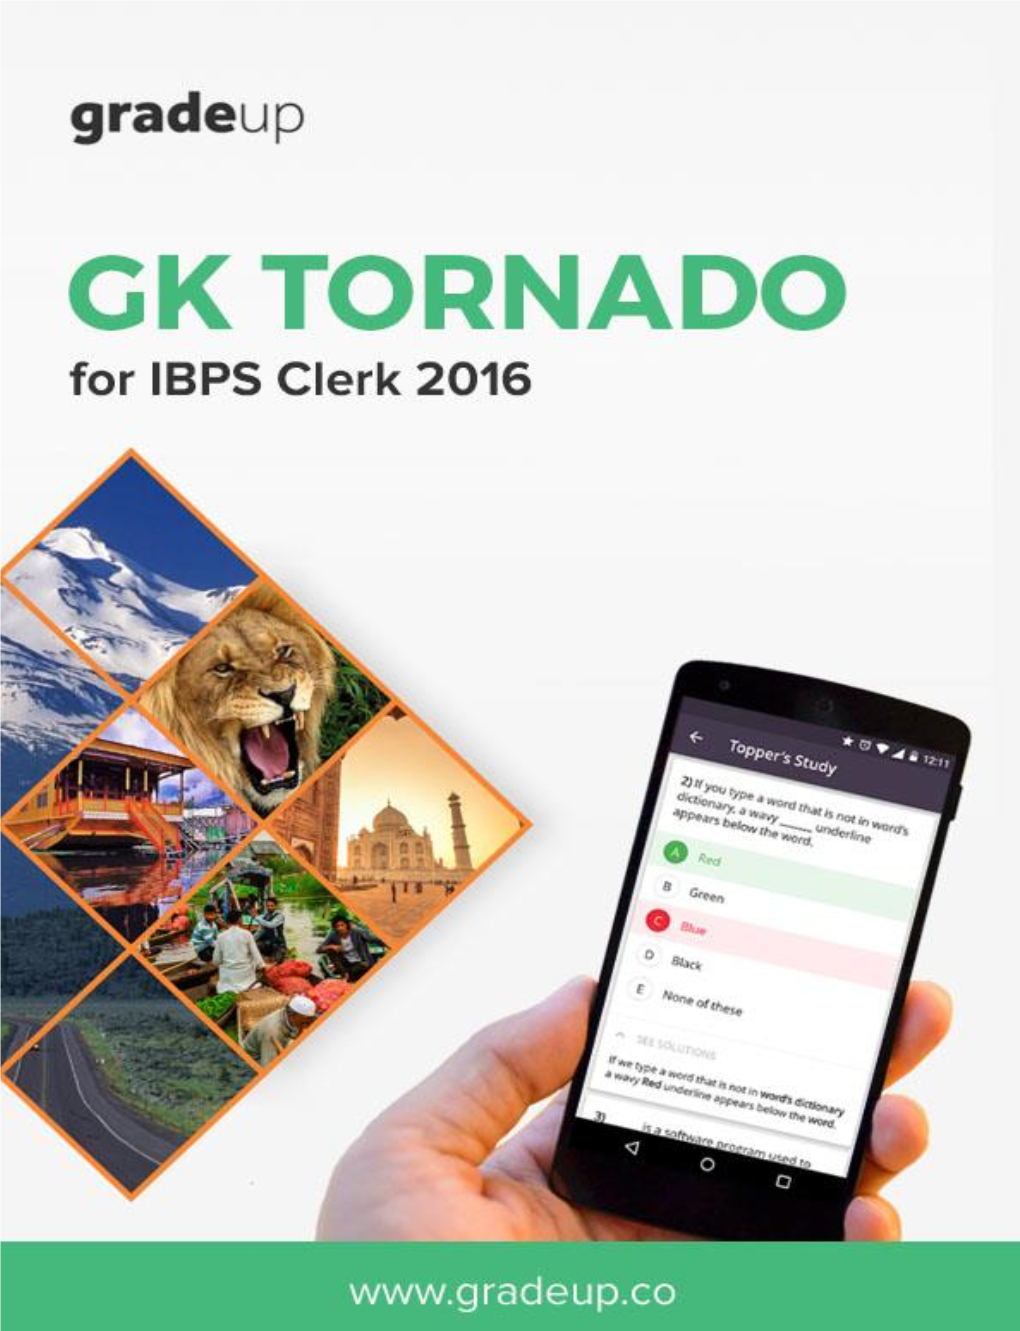 Static GK Tornado for IBPS Clerk 2016